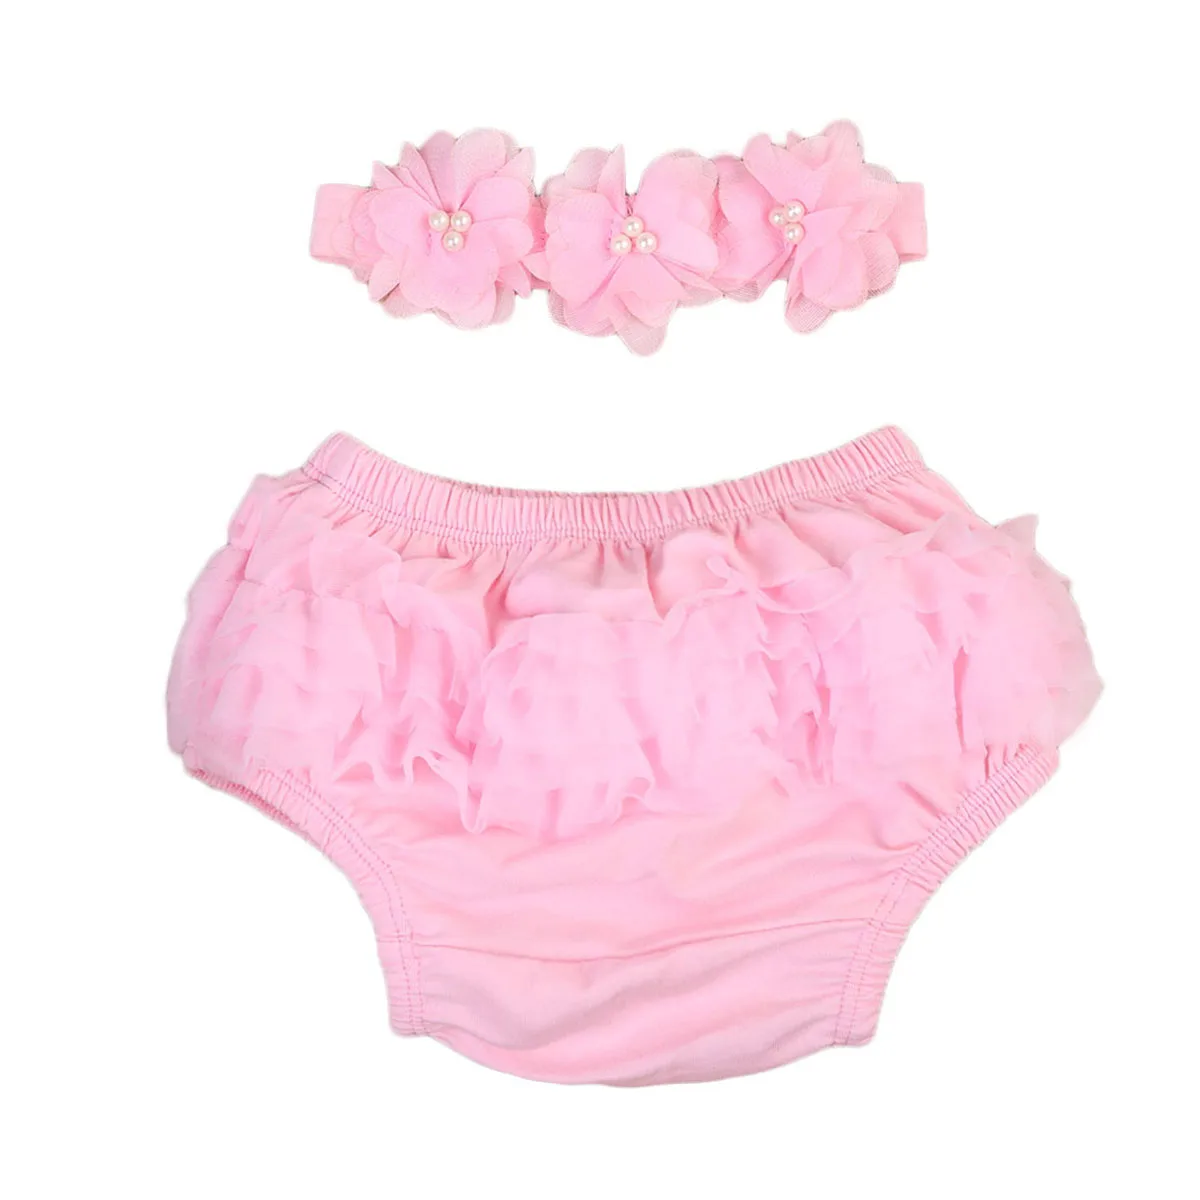 Pp шорты для маленьких девочек+ повязка на голову, новинка года, кружевные подгузники для новорожденных девочек, полипропиленовые трусы шорты с юбкой-пачкой, шорты, От 0 до 2 лет - Цвет: Розовый